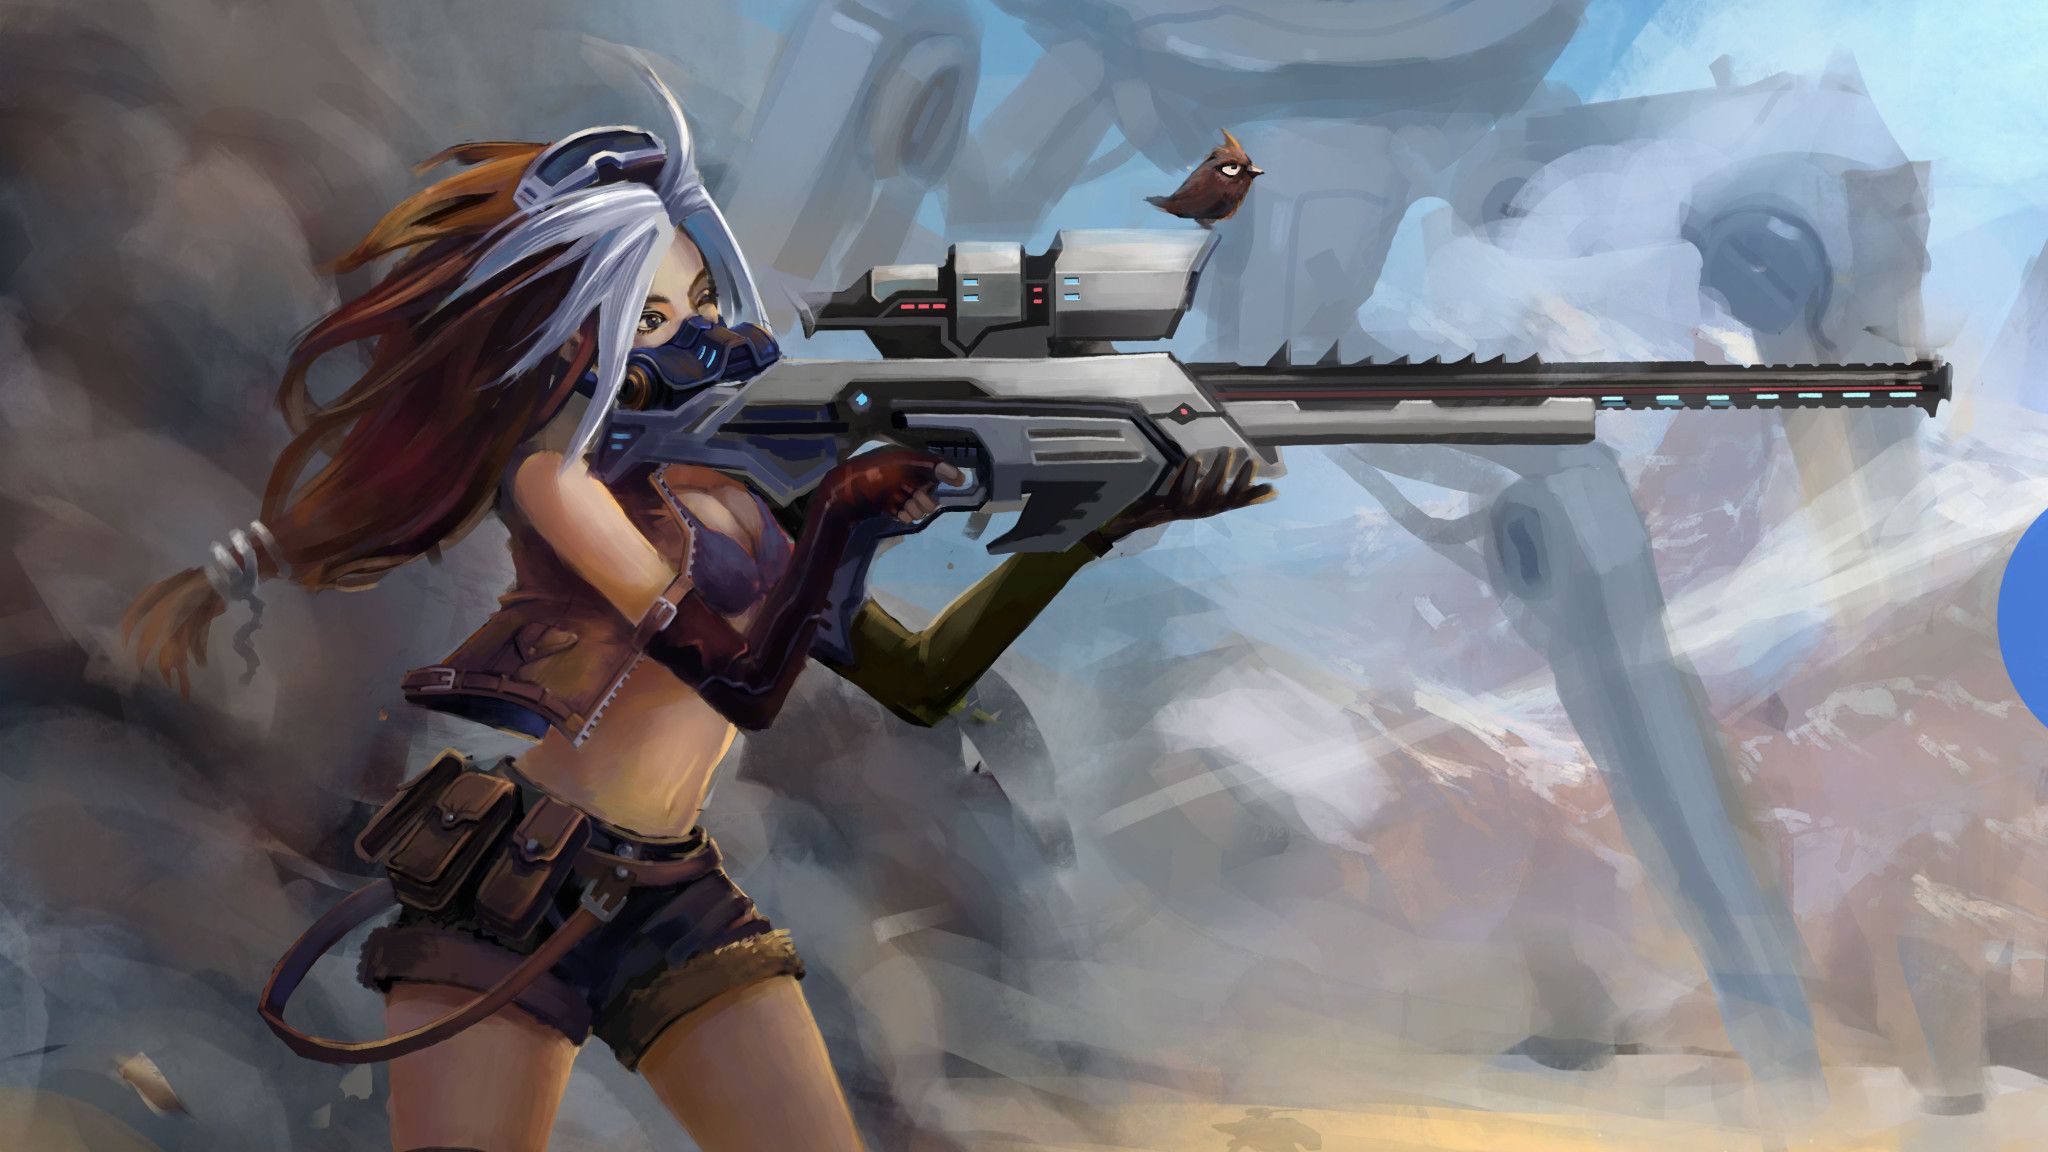 Sniper Girl Fantasy Art 4k 2048x1152 Resolution HD 4k